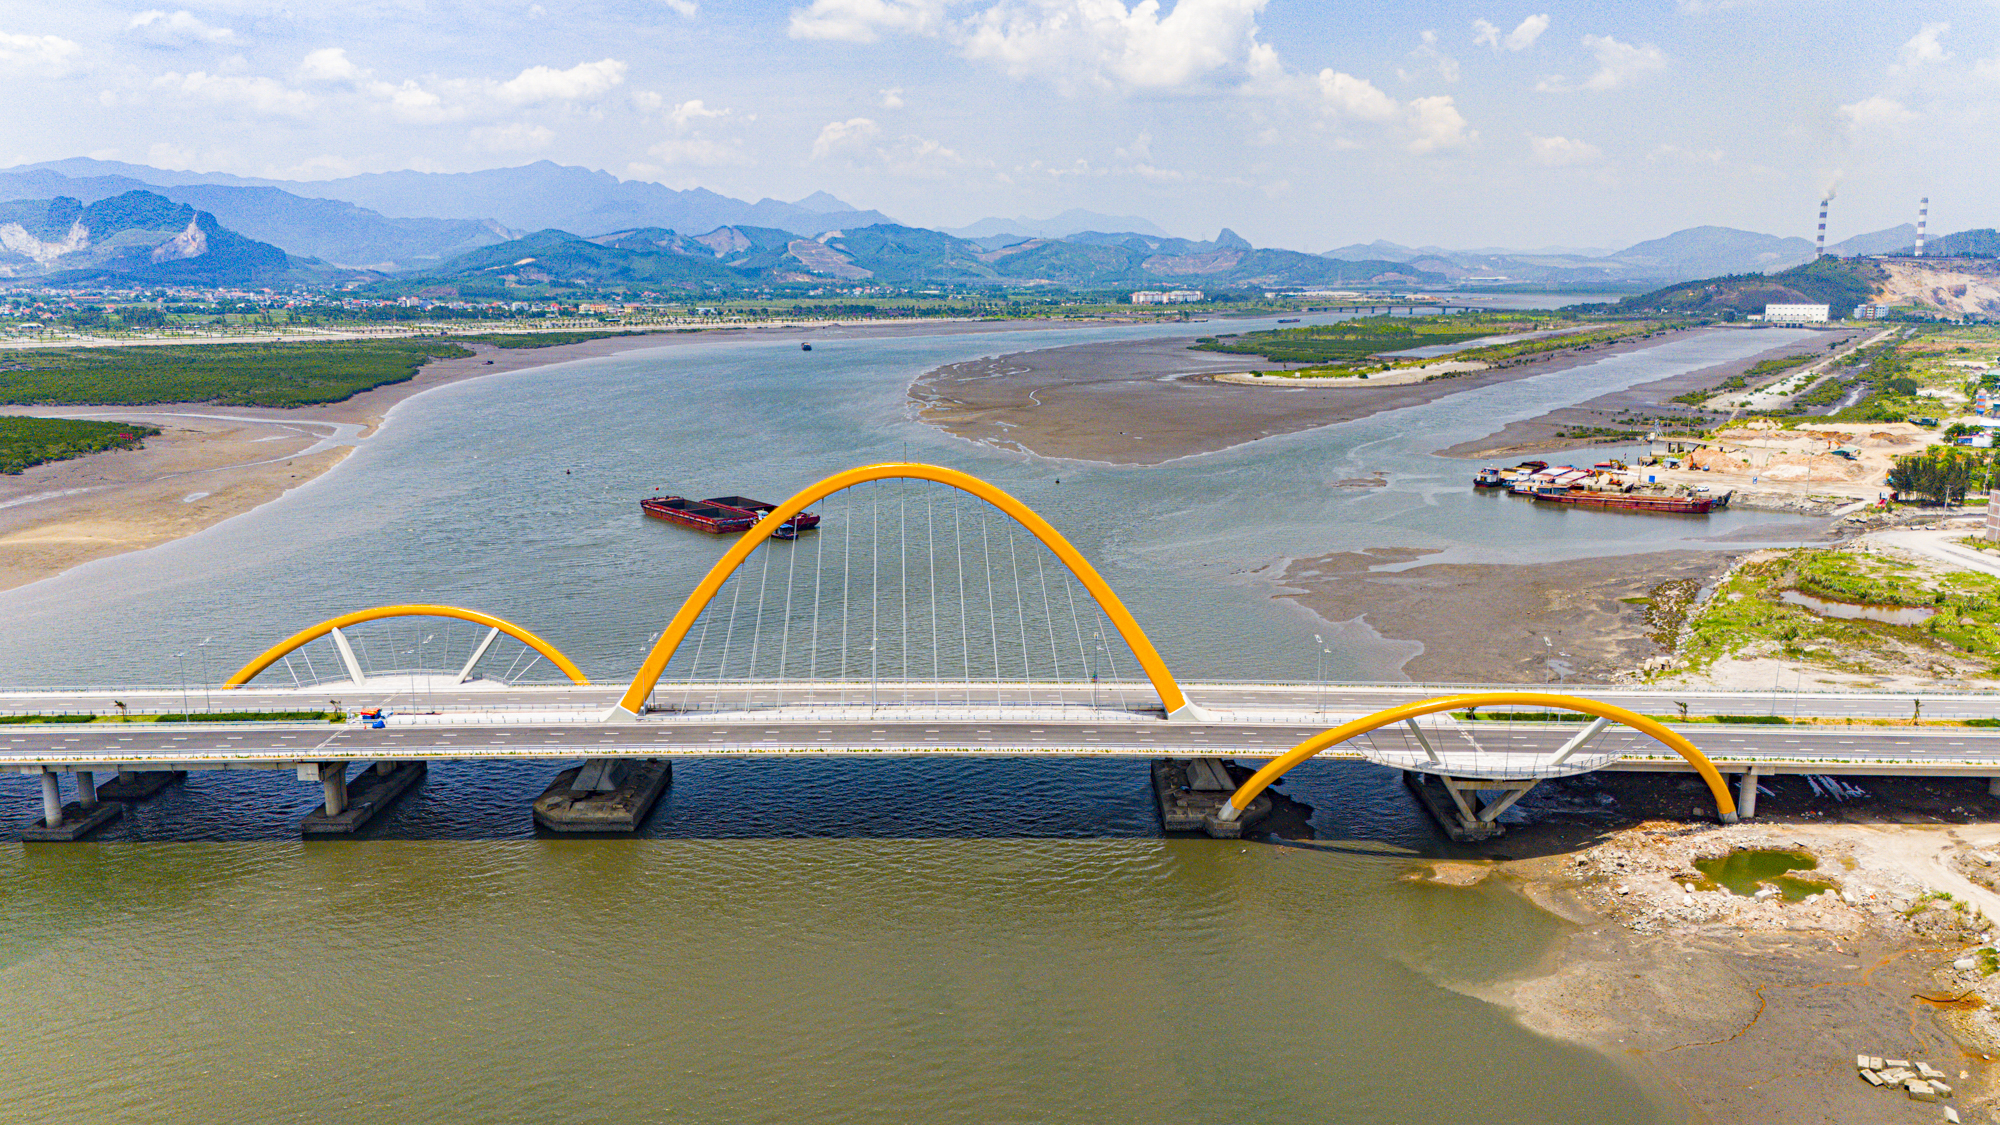 Toàn cảnh khu vực sẽ xây cầu dài hơn 3,5 km, nằm giữa 3 cây cầu trị giá 6.000 tỷ, nối liền 'Vịnh Sydney bên bờ Vịnh Hạ Long' tương lai của Việt Nam- Ảnh 2.